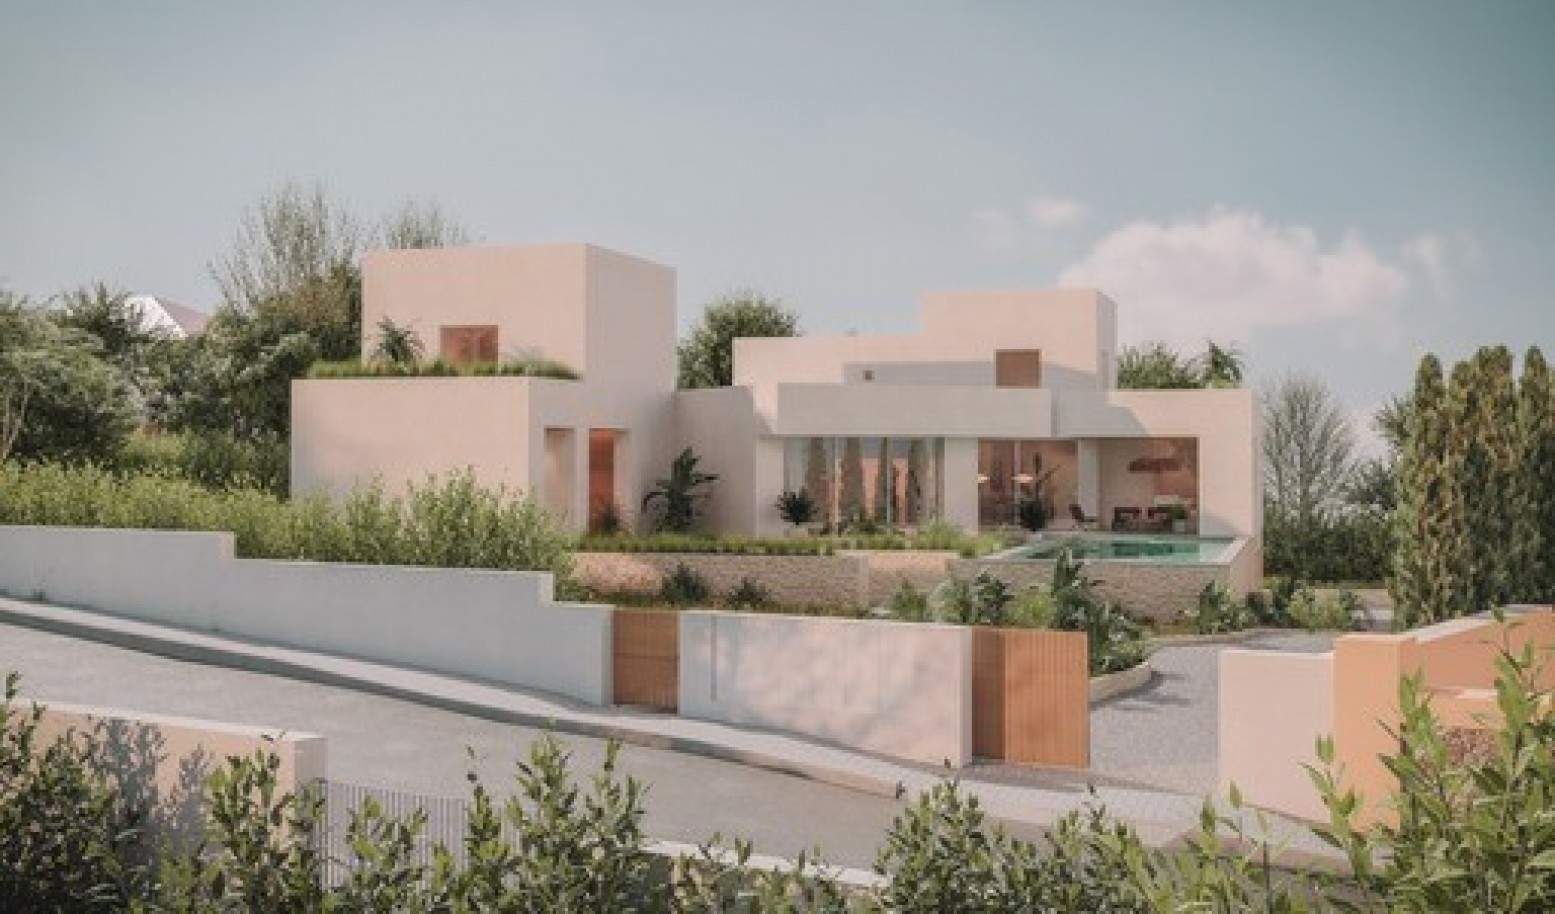 Villa de 4 dormitorios en construcción, en venta en Lagos, Algarve_208681